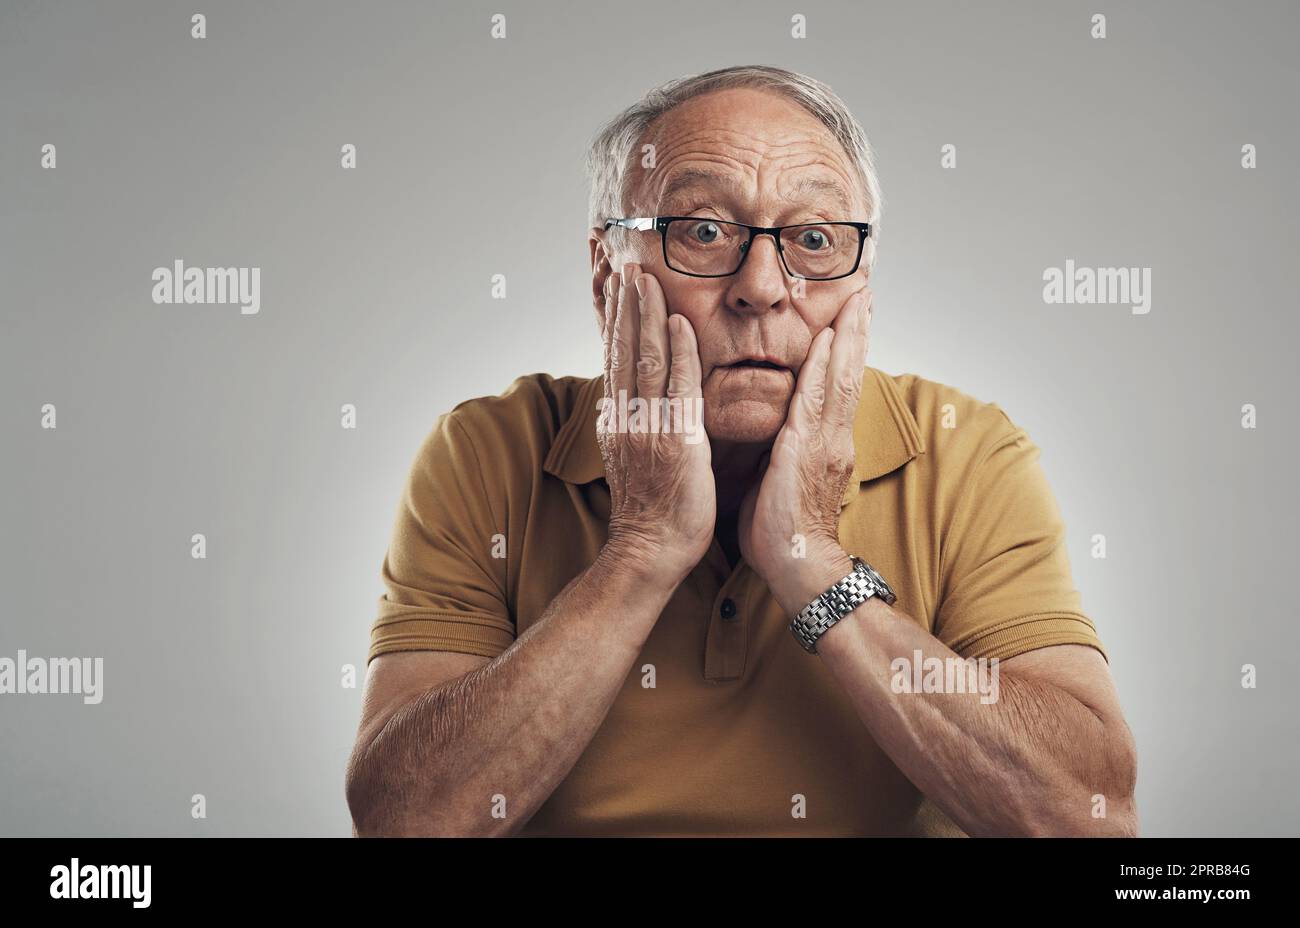 Ce ne peut pas être vrai. Photo studio d'un homme âgé en incrédulité sur fond gris. Banque D'Images